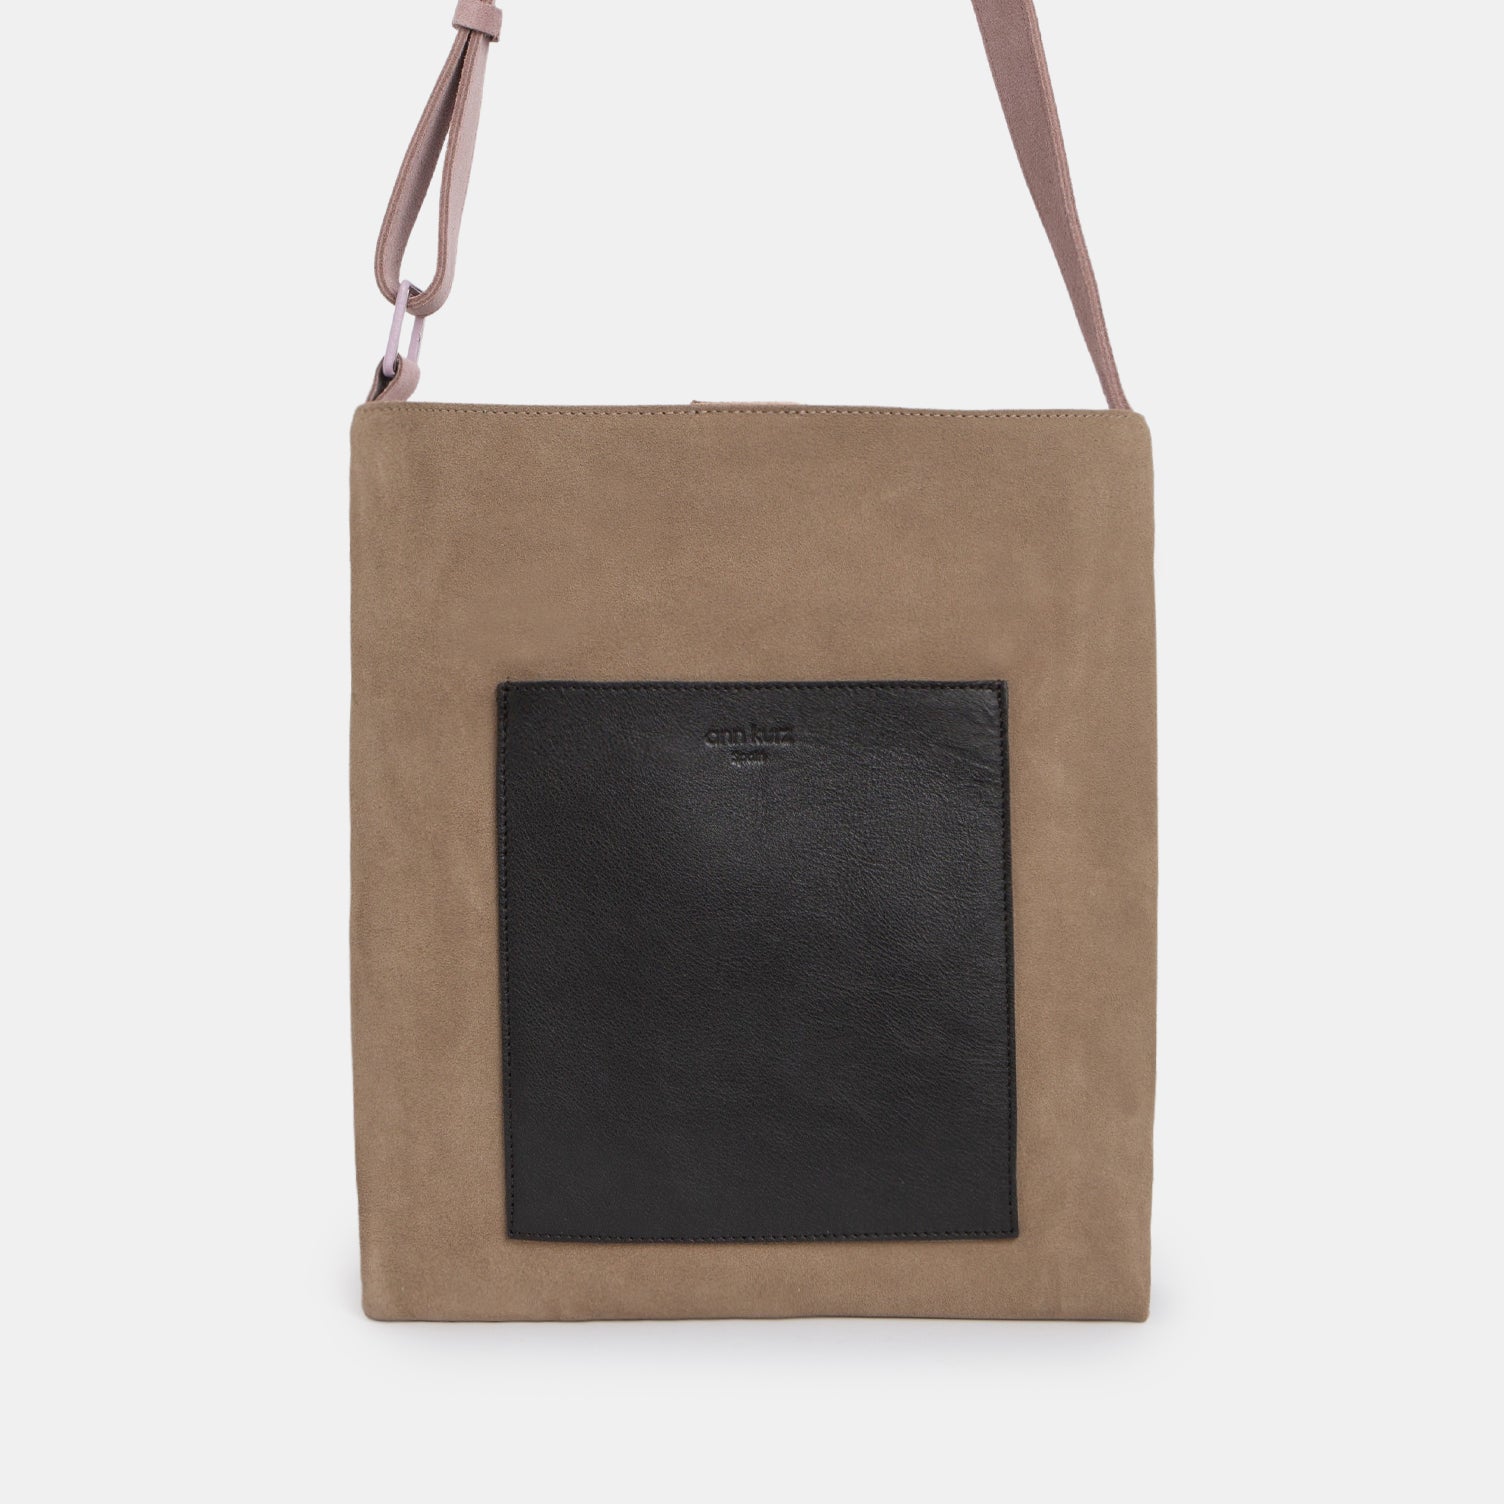 ann kurz Outstanding Pocket Large Shopper Bag -Suede Tierra Multicolor- ann kurz